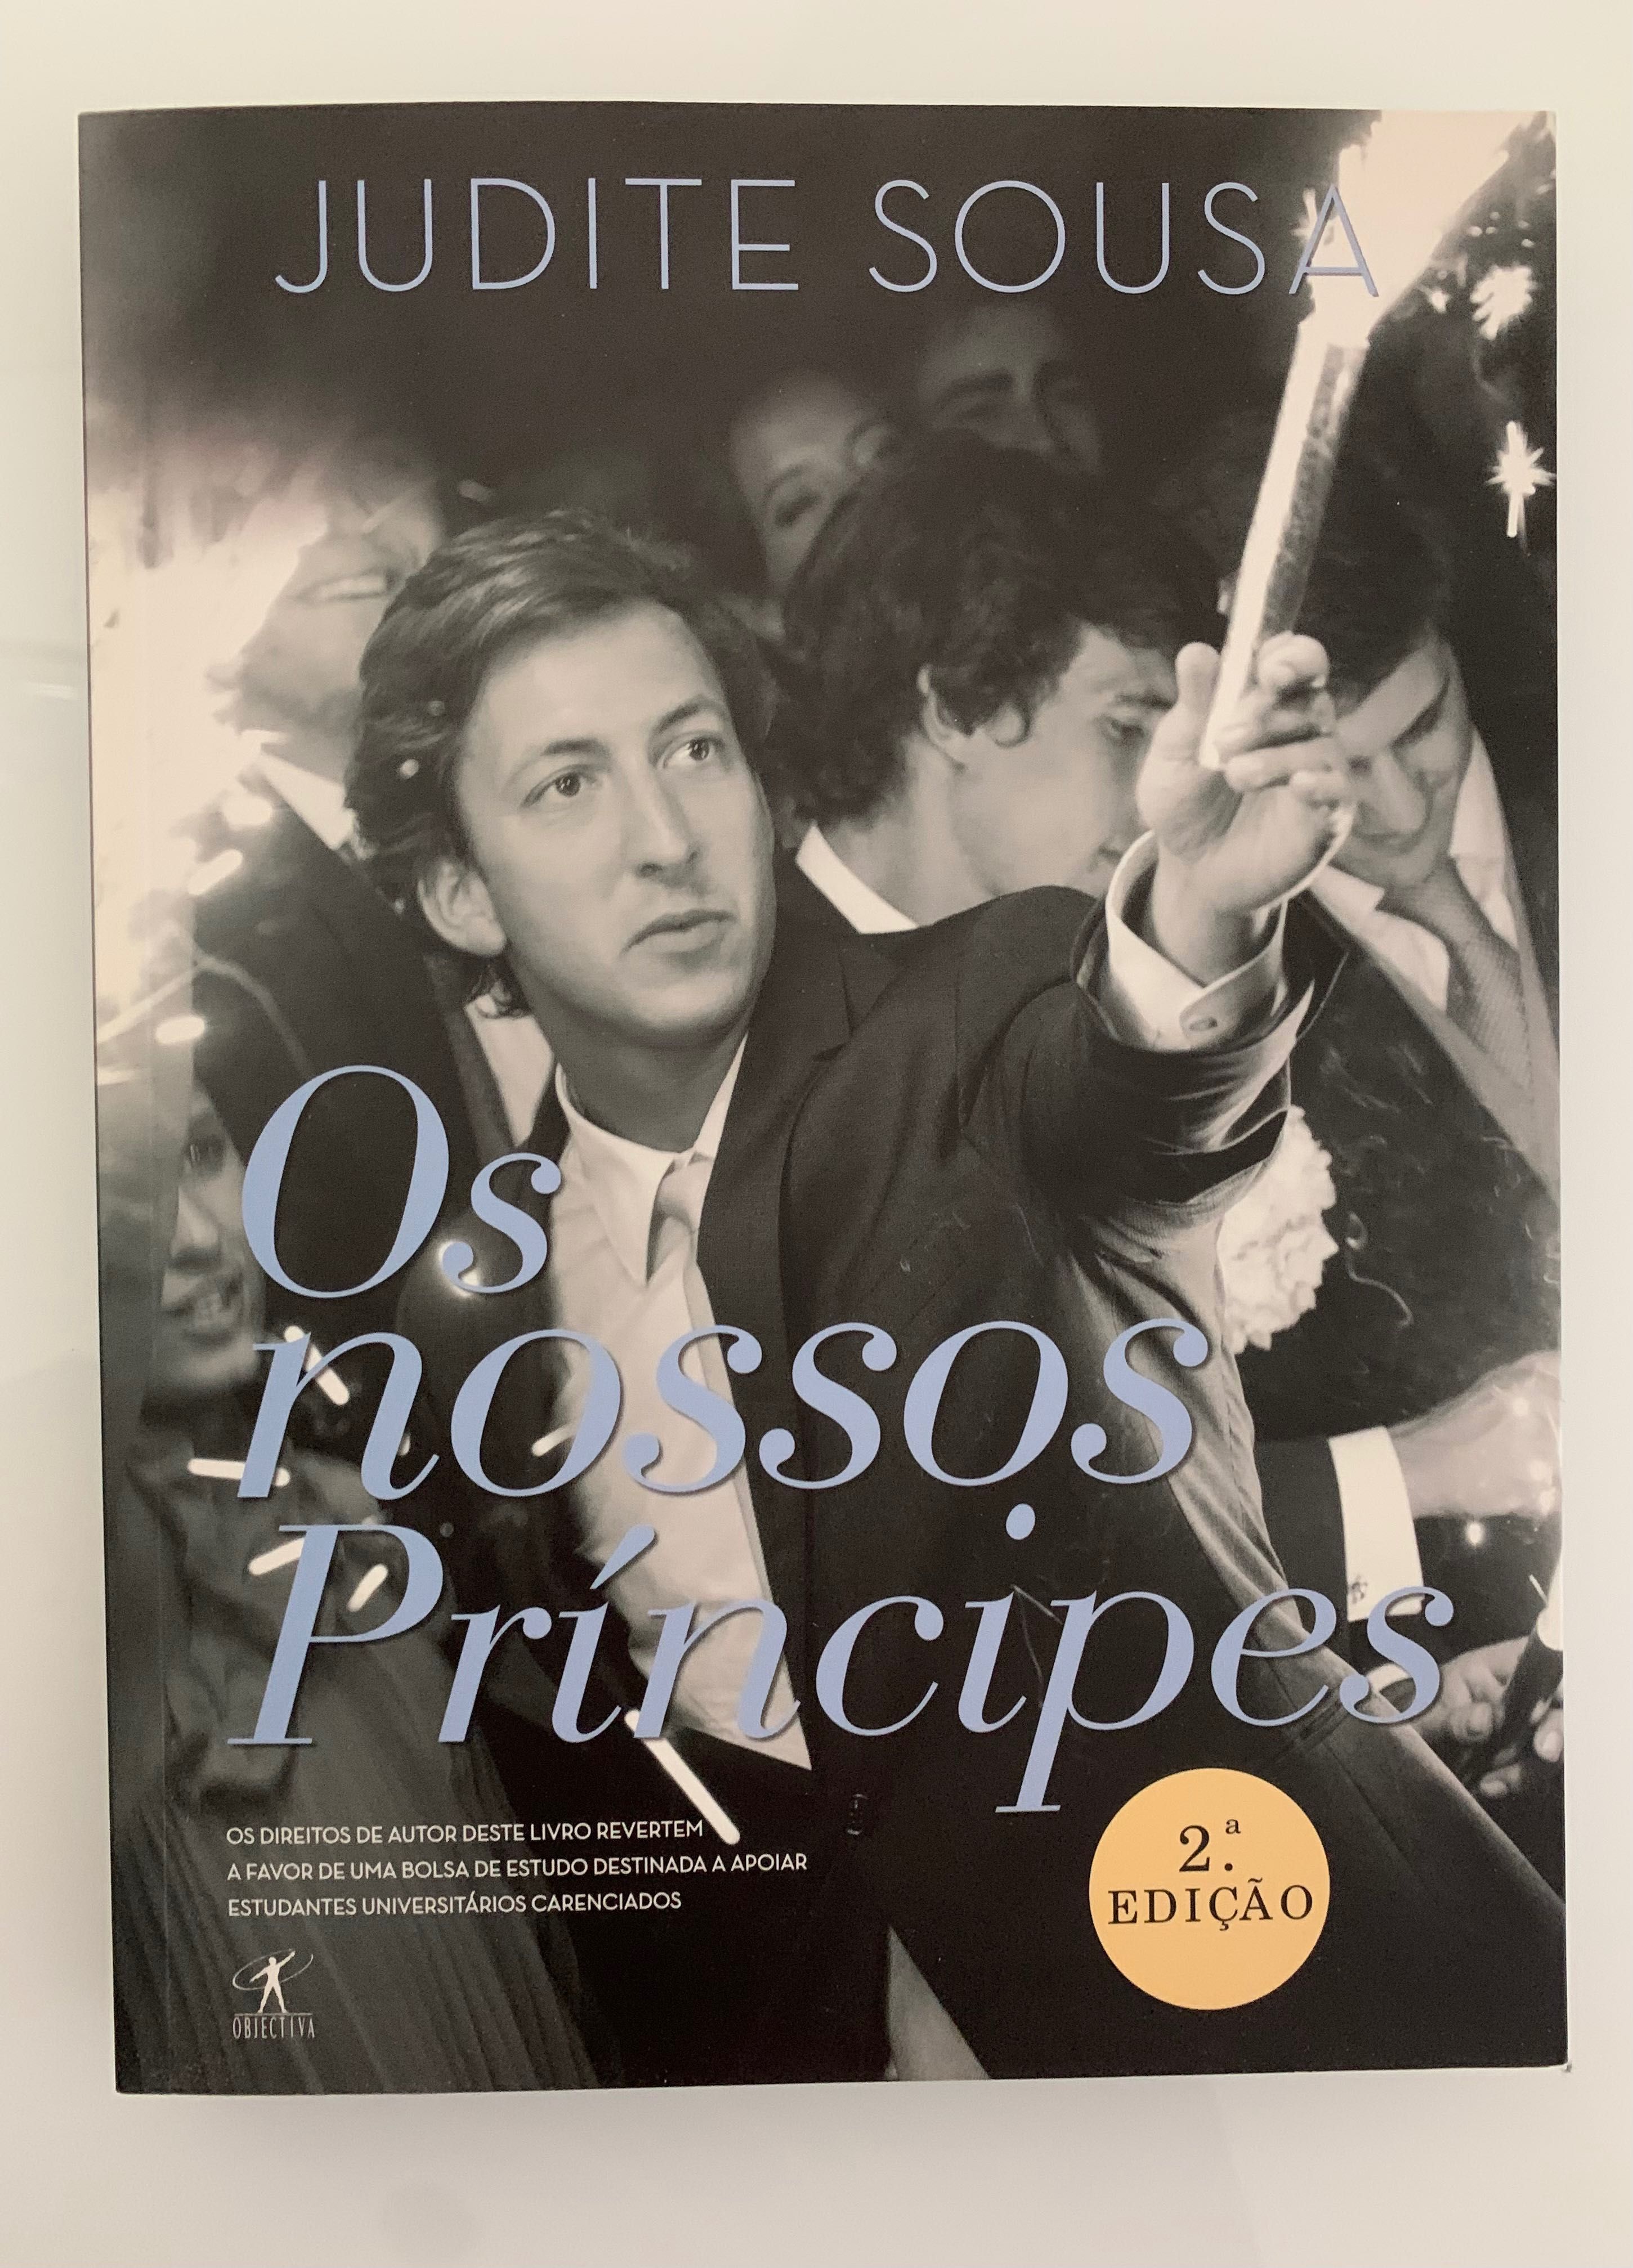 Livro “Os nossos príncipes” - Judite de Sousa